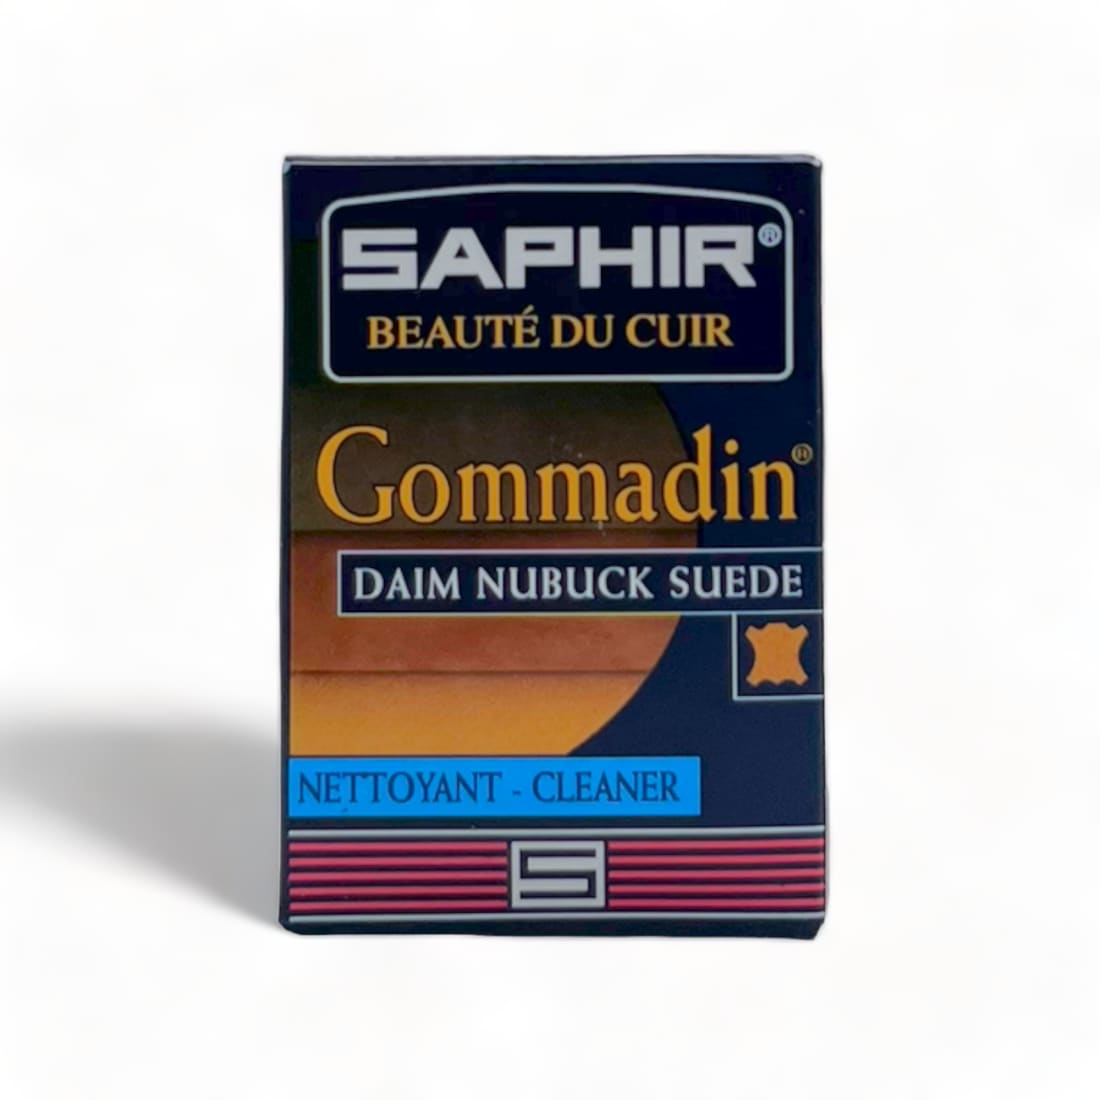 Gommadin - Saphir - Accessoires